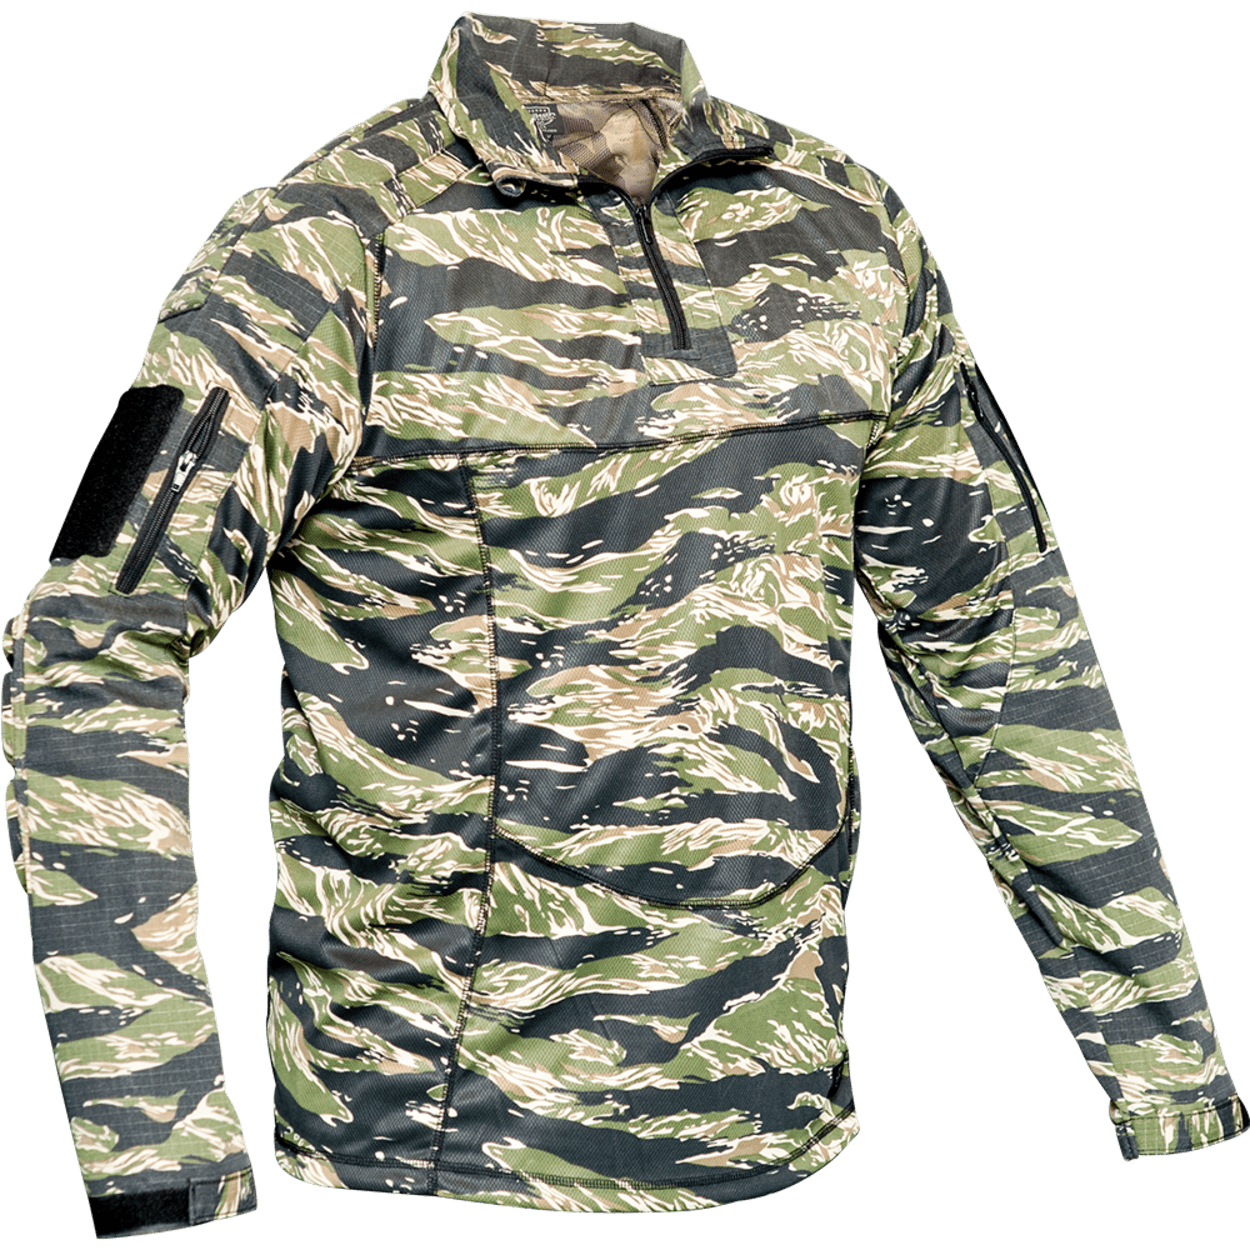 Valken TANGO Combat Shirt-Tiger Stripe-L - Walmart.com.